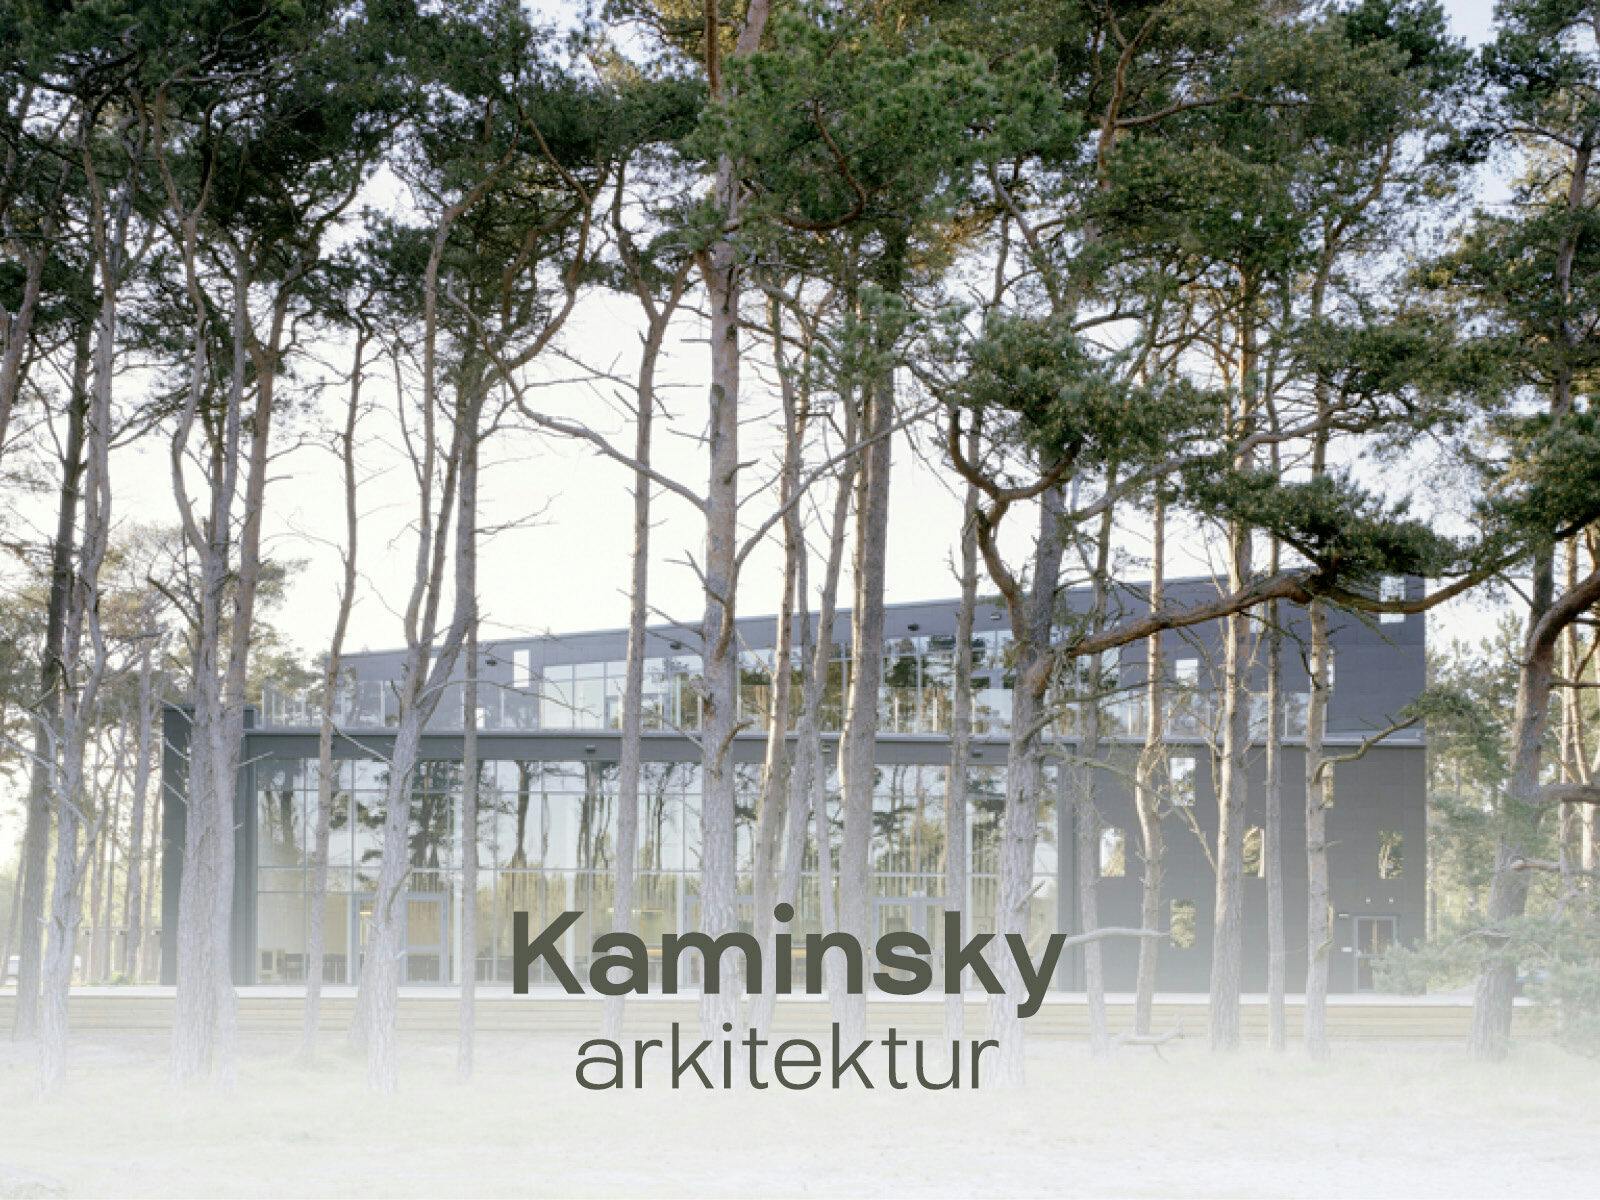 Naturskyddsföreningens företagssamarbete med Kaminsky arkitektur.